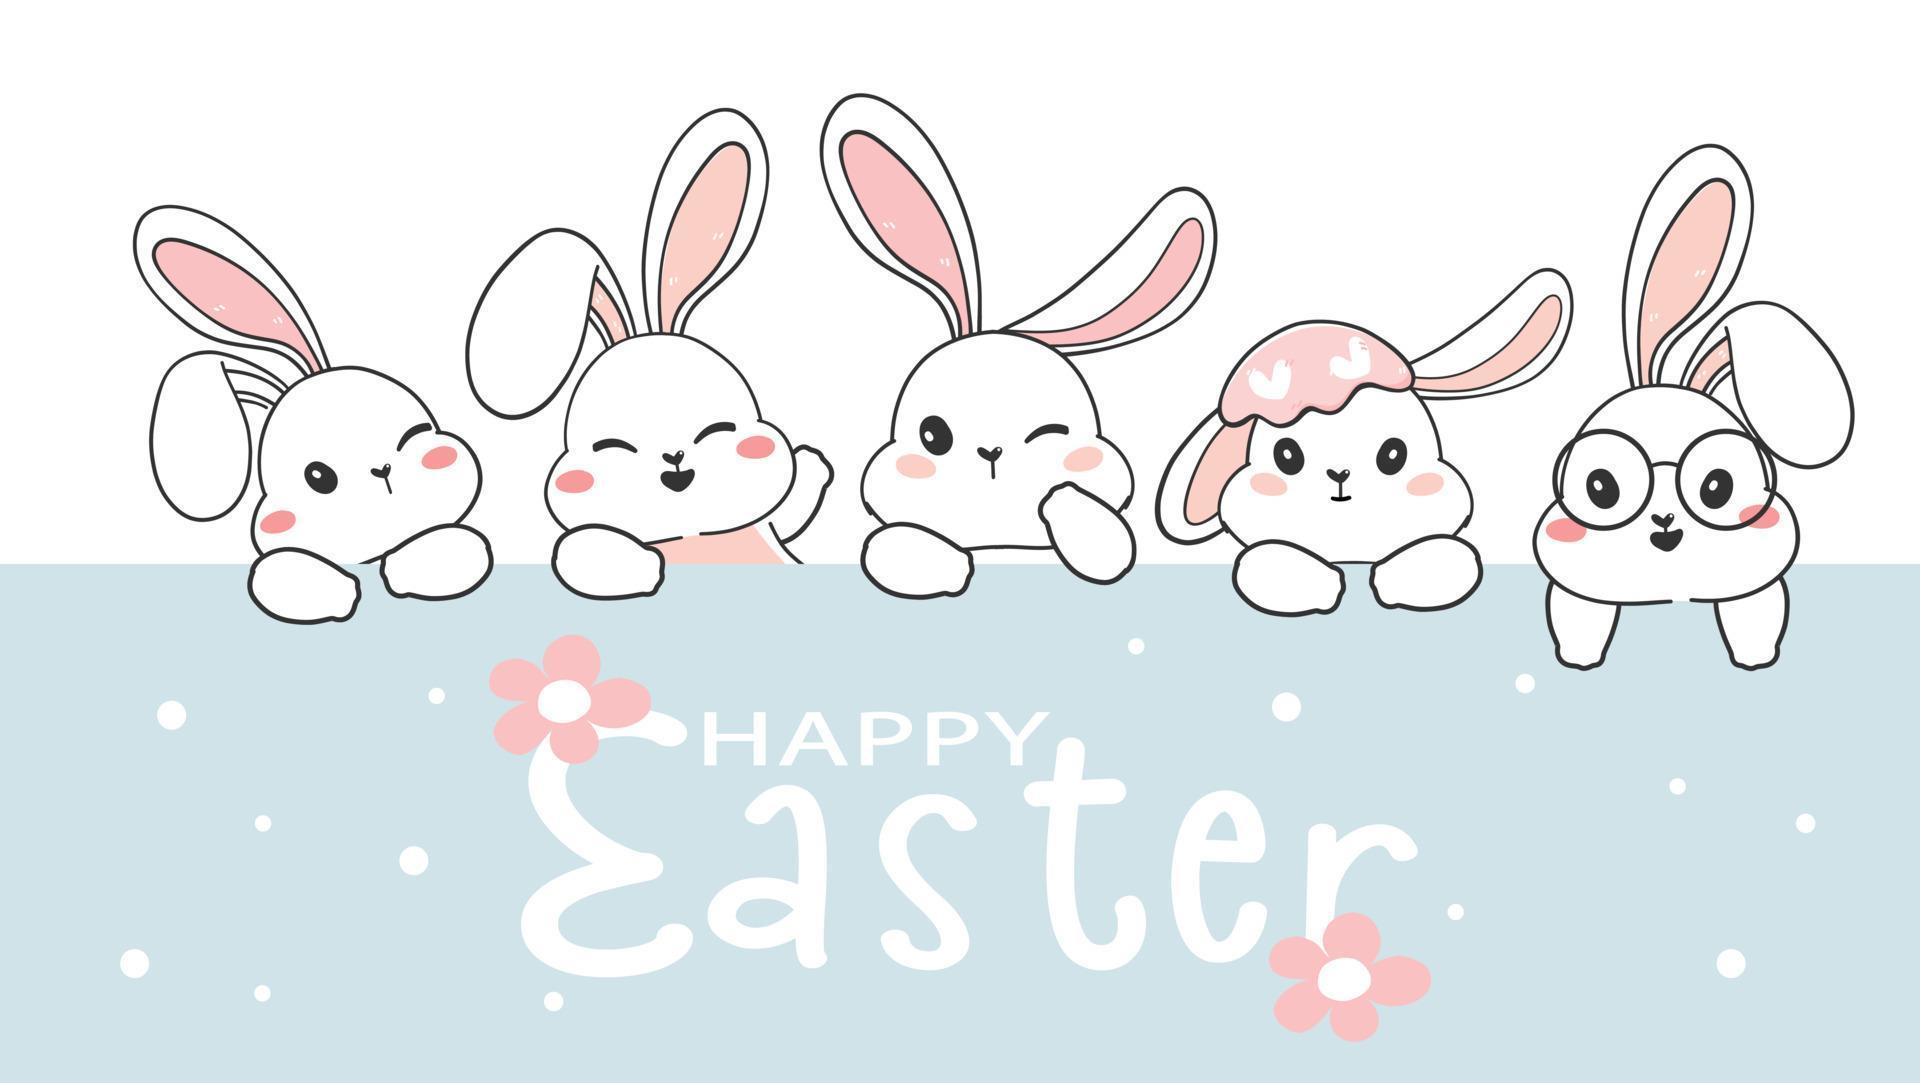 leuke vrolijke pasen-wenskaart, groep witte konijnenkoppen, schattige konijnentekenset, cartoon dieren in het wild dier vakantie tekening vector